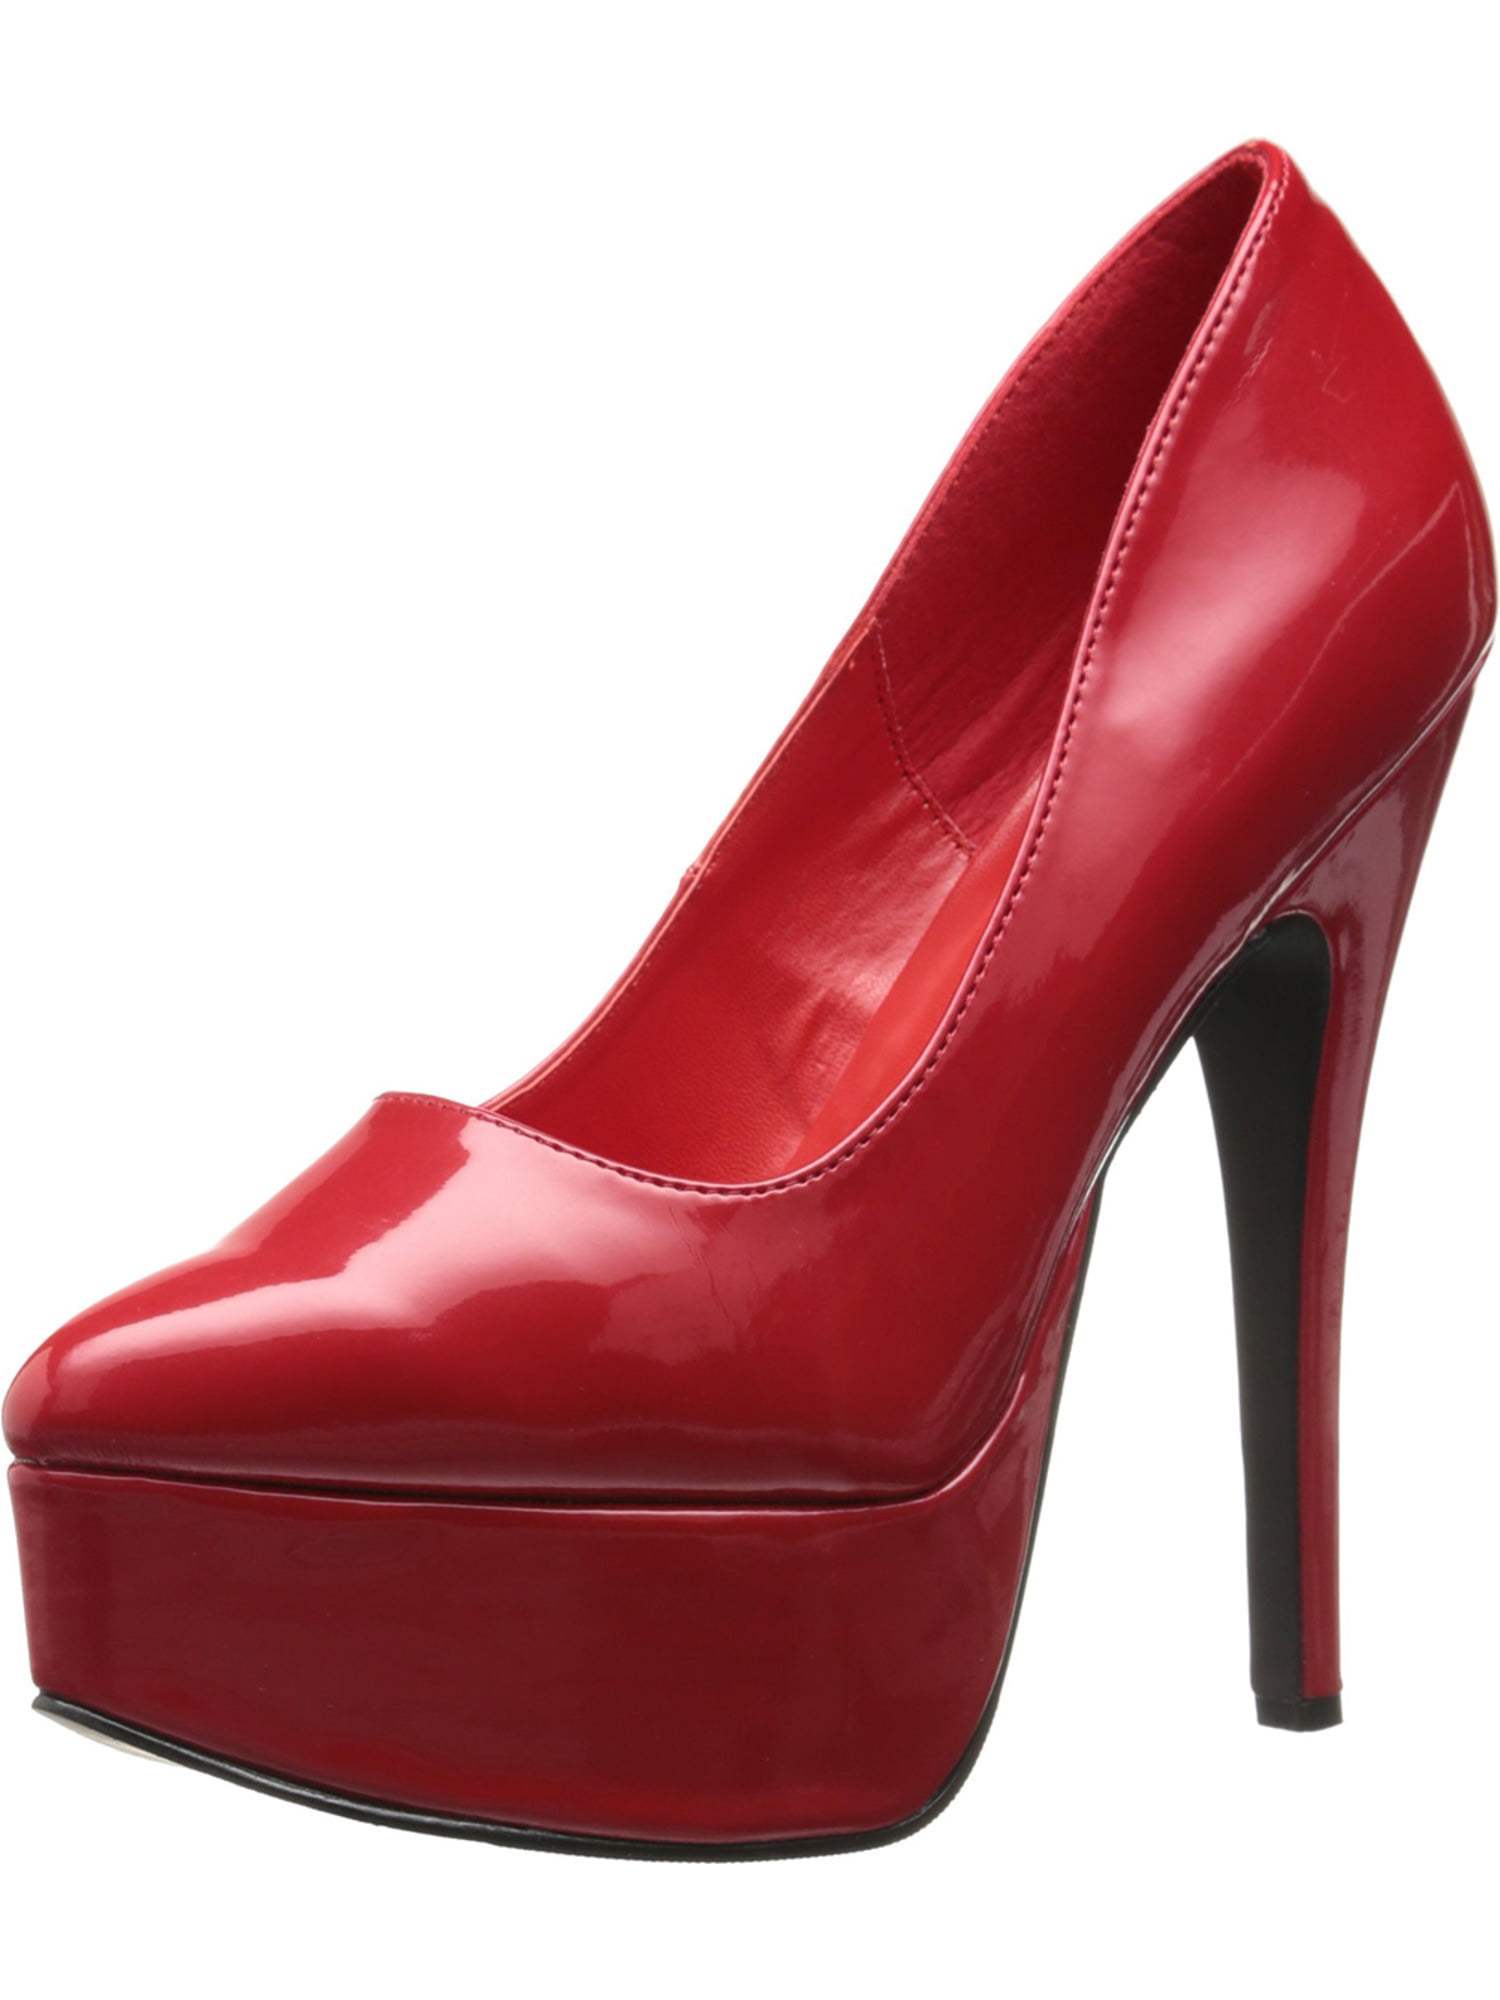 [P].[amz_brand] - women's slip on 6.5 inch stiletto heel platform pumps ...